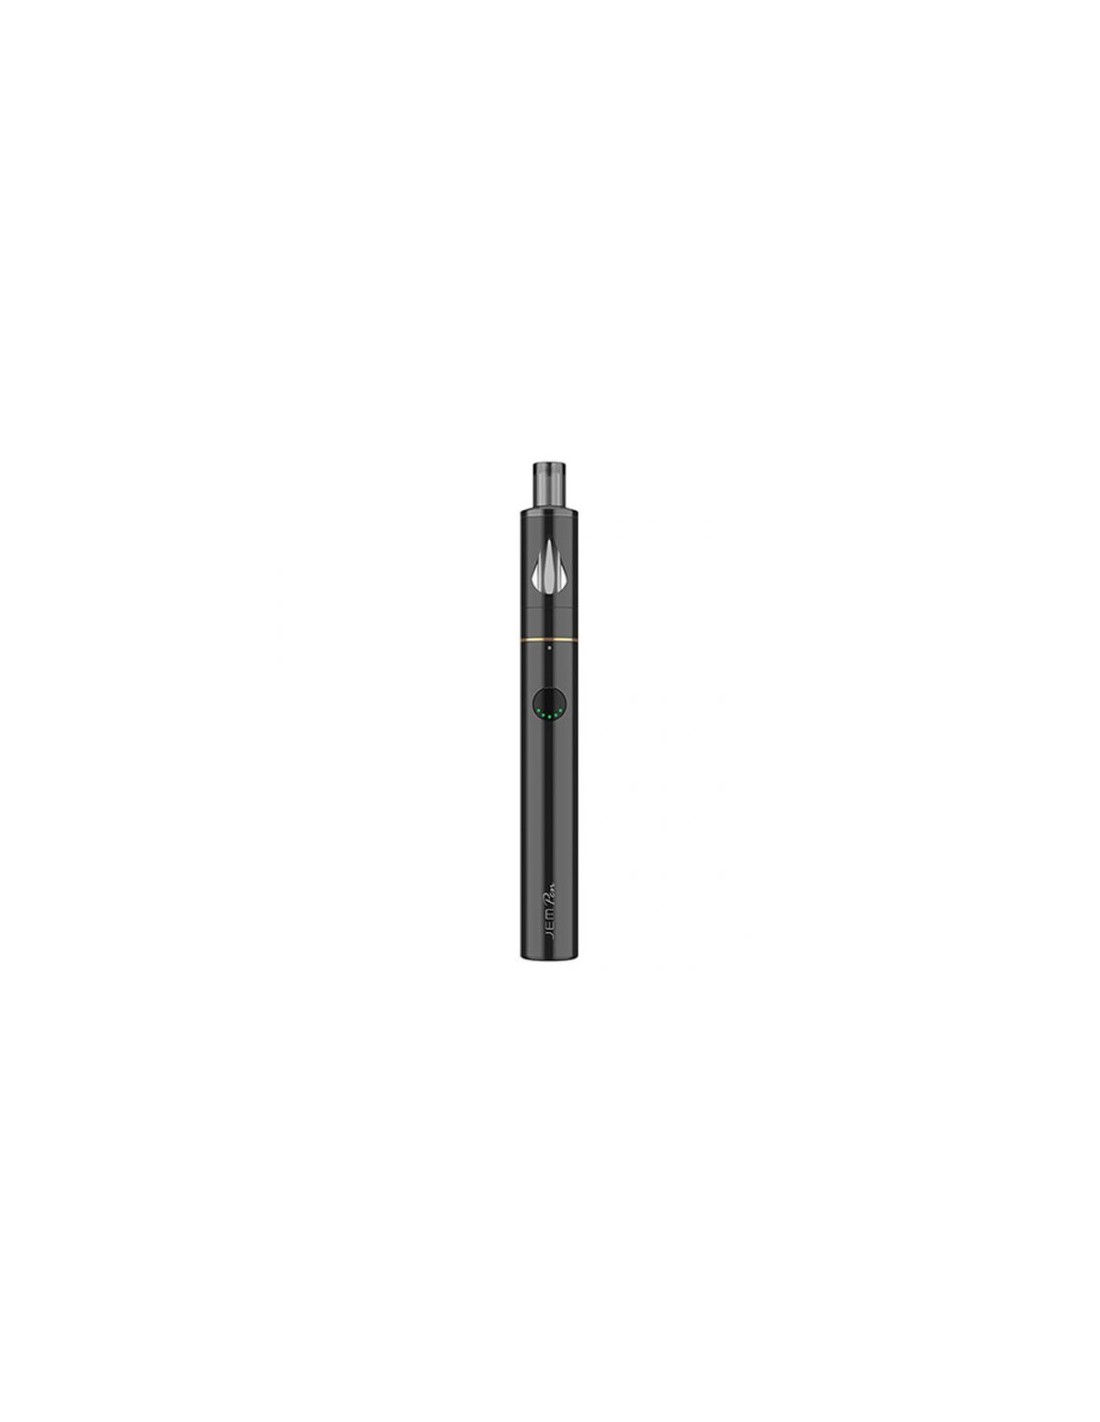 Jem Pen Innokin sigaretta elettronica per concentrati Cbd